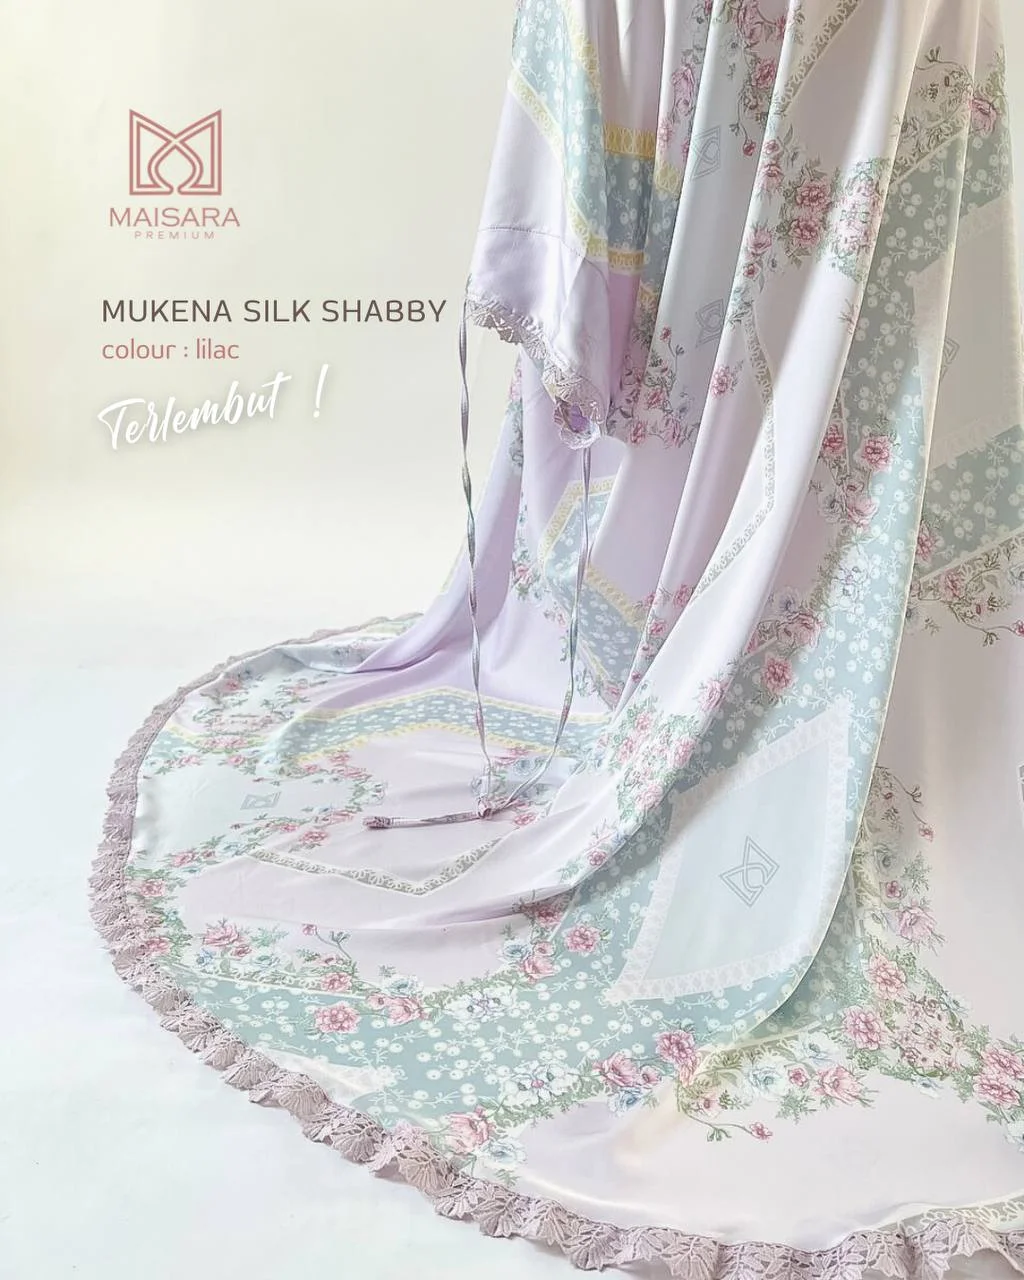 mukena silk shabby maisara - lilac